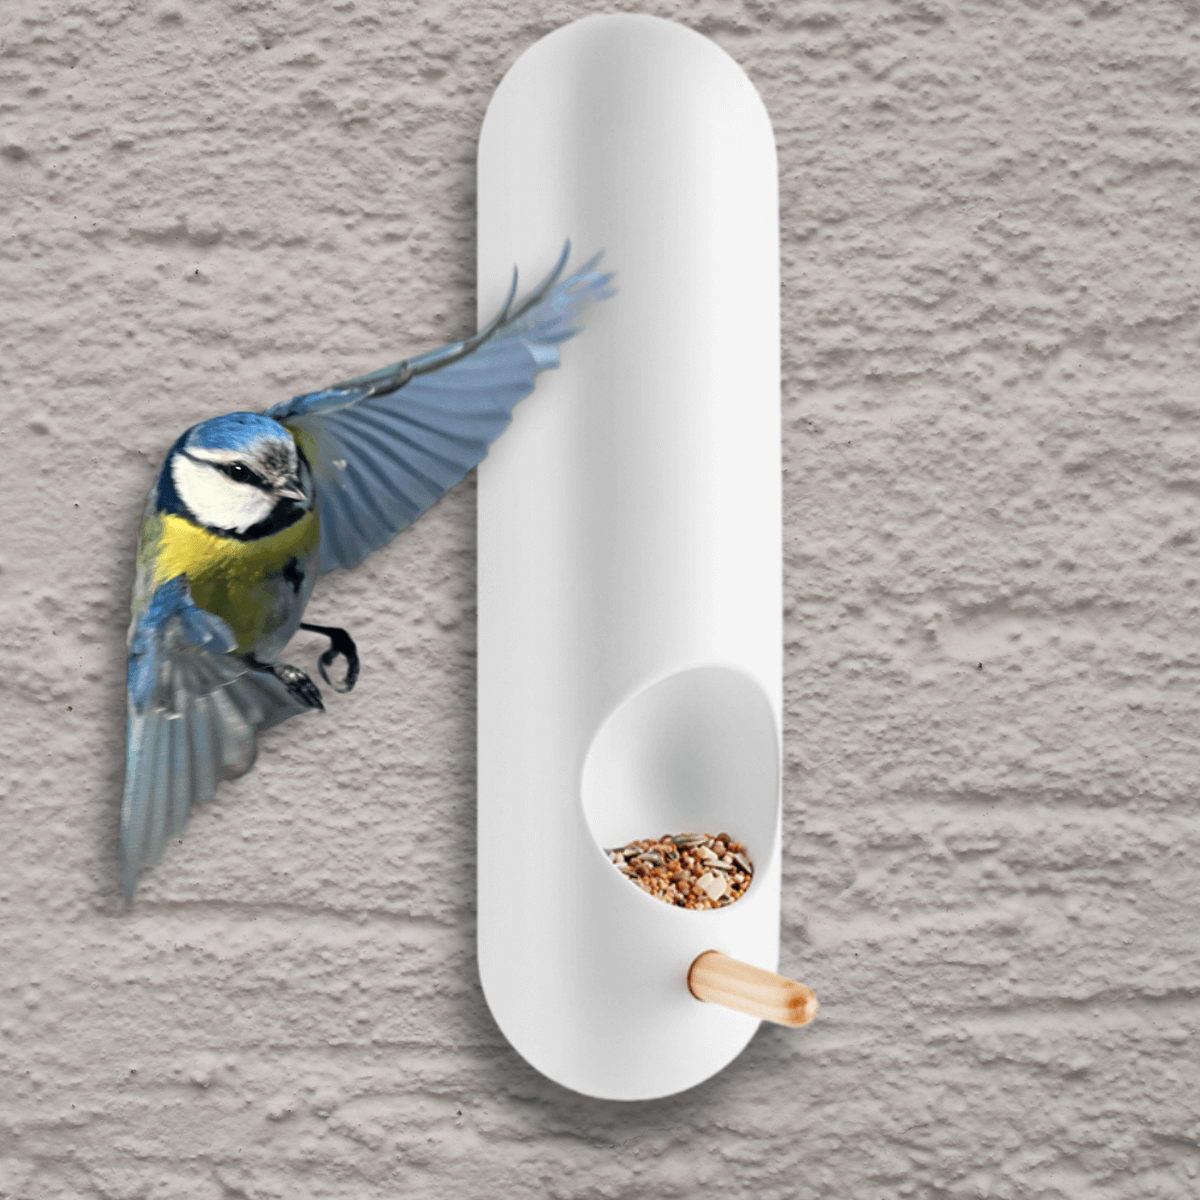 falra rögzíthető, hosszúkás cső alakú fehér madáretető amire cinege készül landolni